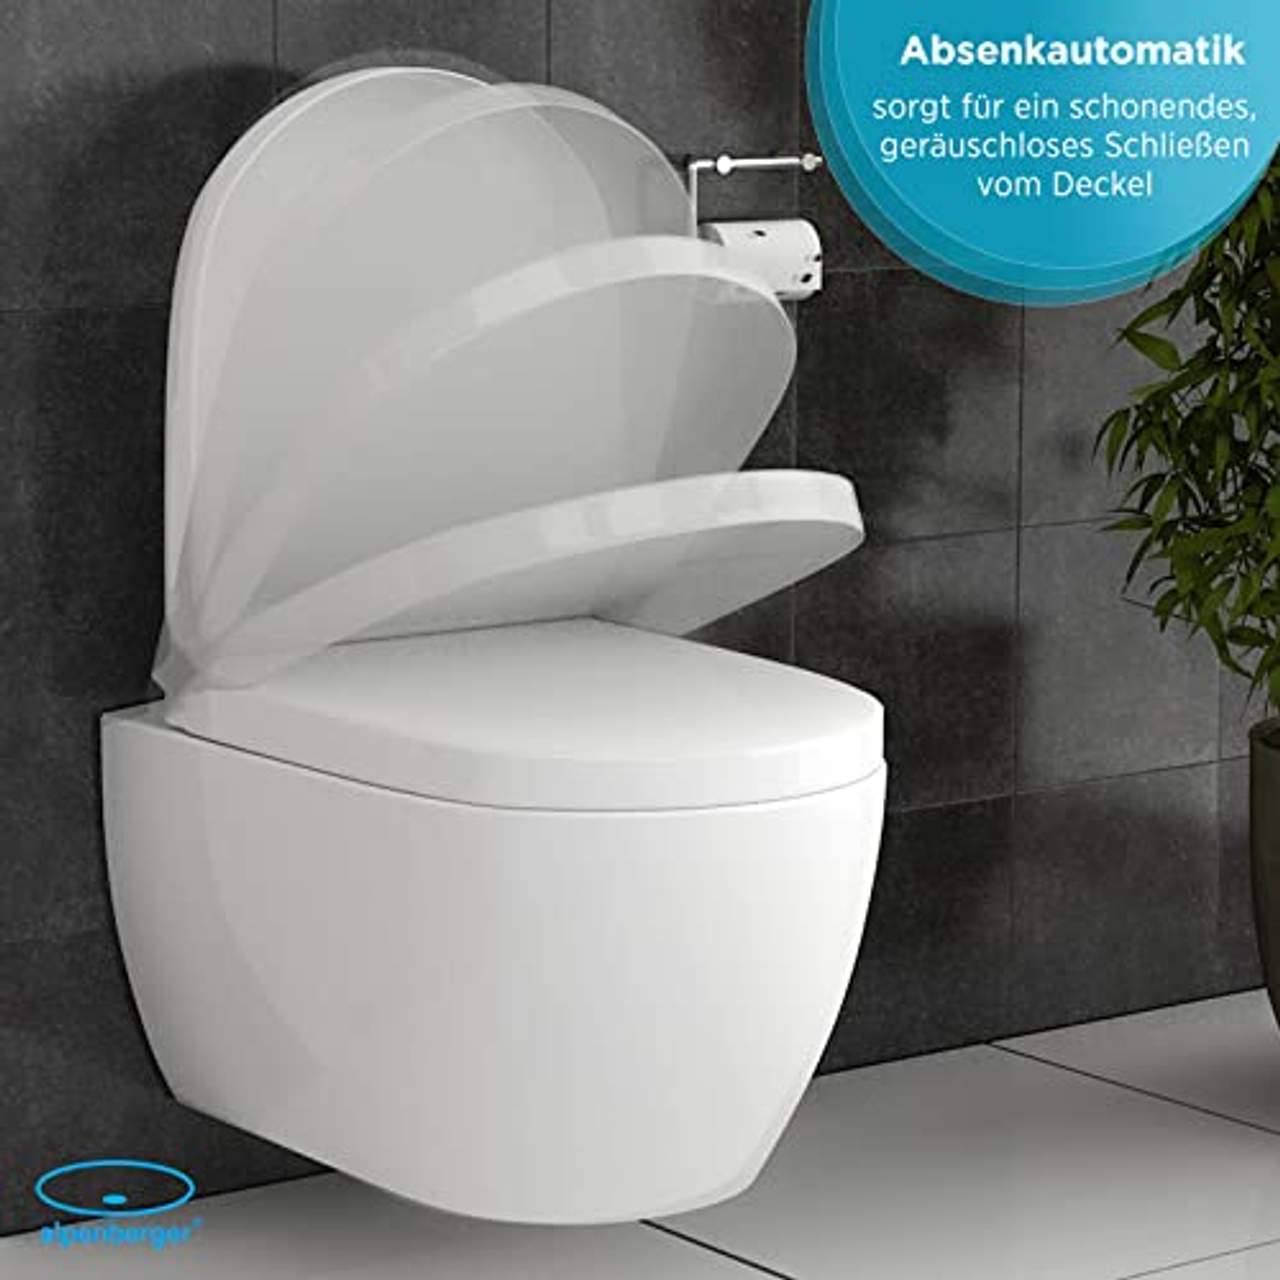 Alpenberger Spülrandloses Tiefspül-WC Abnehmbarer WC-Sitz